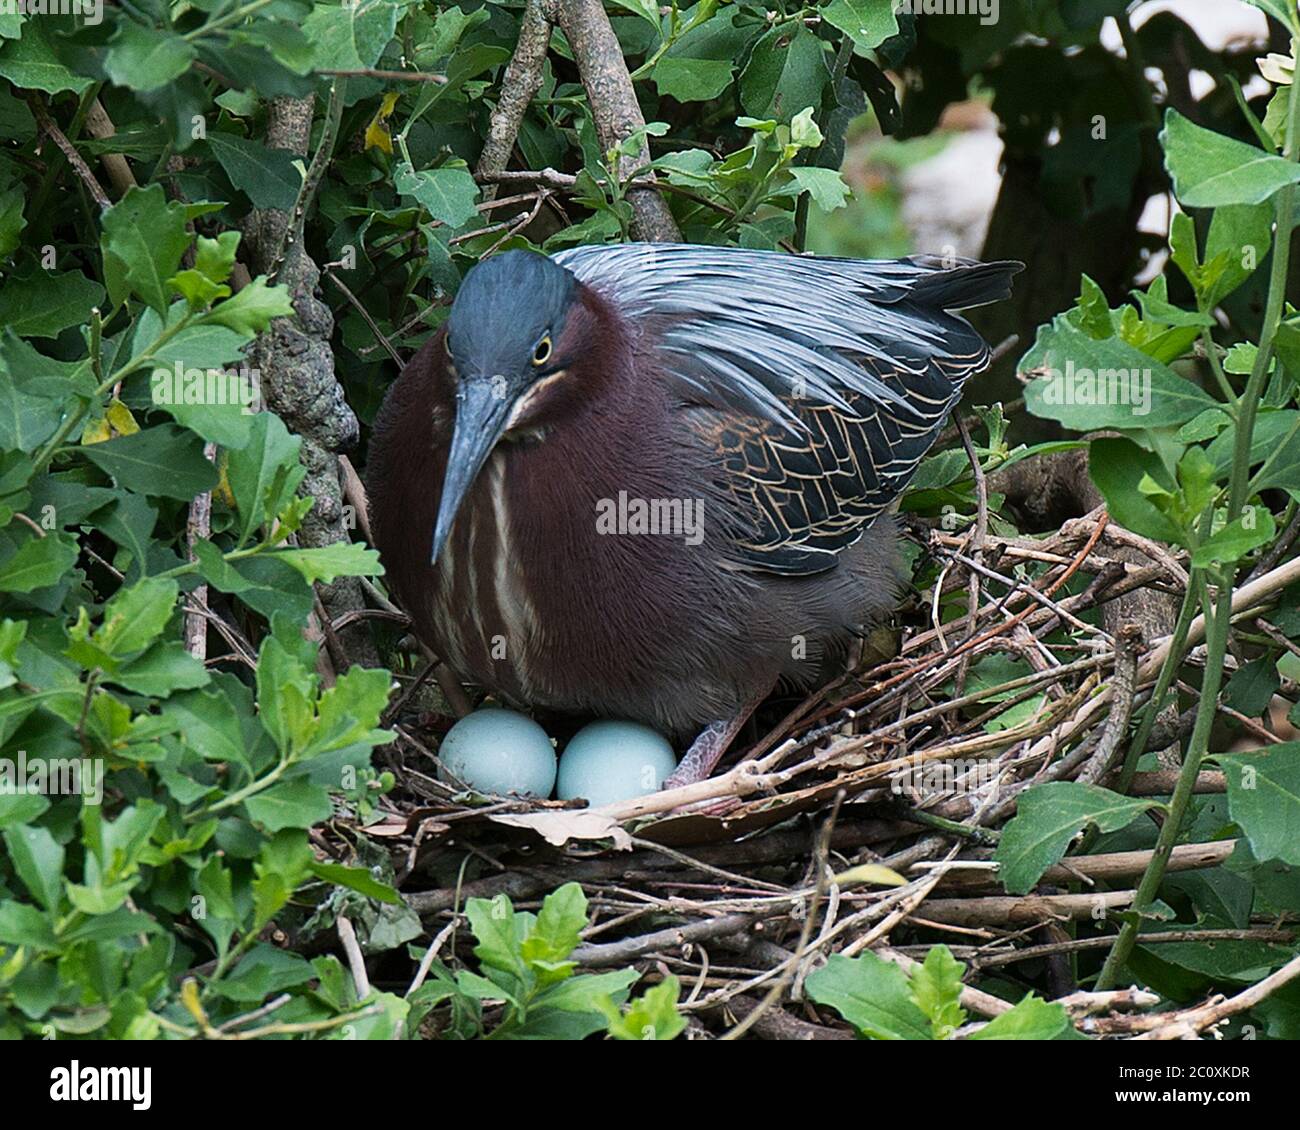 Grünreiher-Vogel Nahaufnahme Profilansicht auf dem Nest mit Eiern, die seine blauen Federn, Kopf, Auge, Schnabel, Gefieder, Füße, Flügel in seiner Umgebung freilegen. Stockfoto